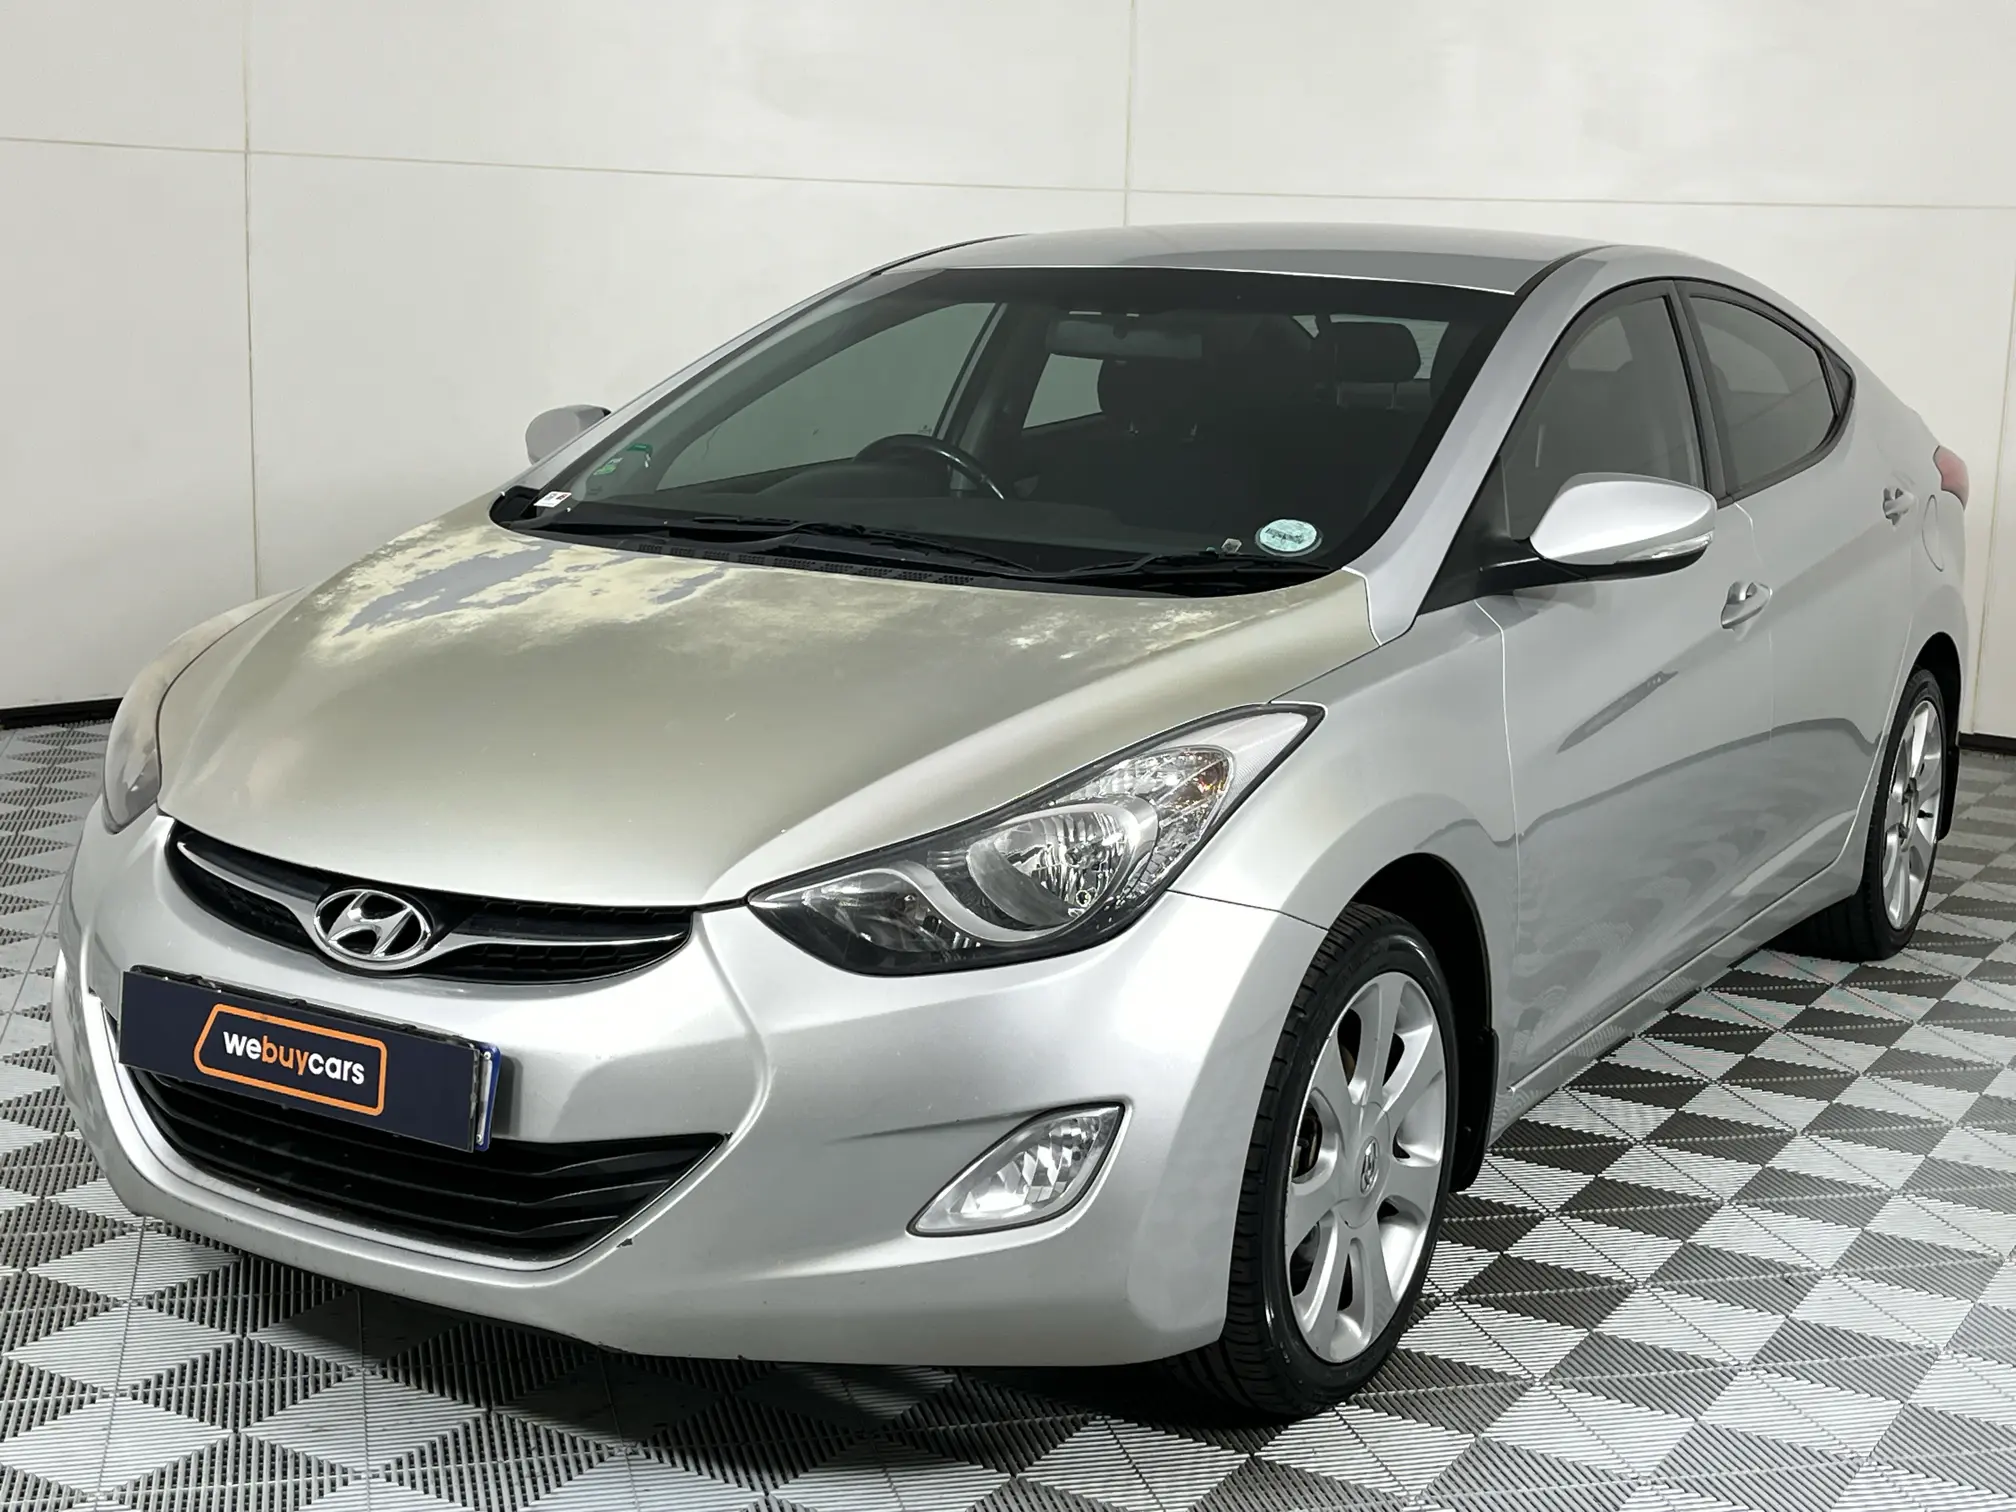 2013 Hyundai Elantra 1.8 Gls/executive Auto